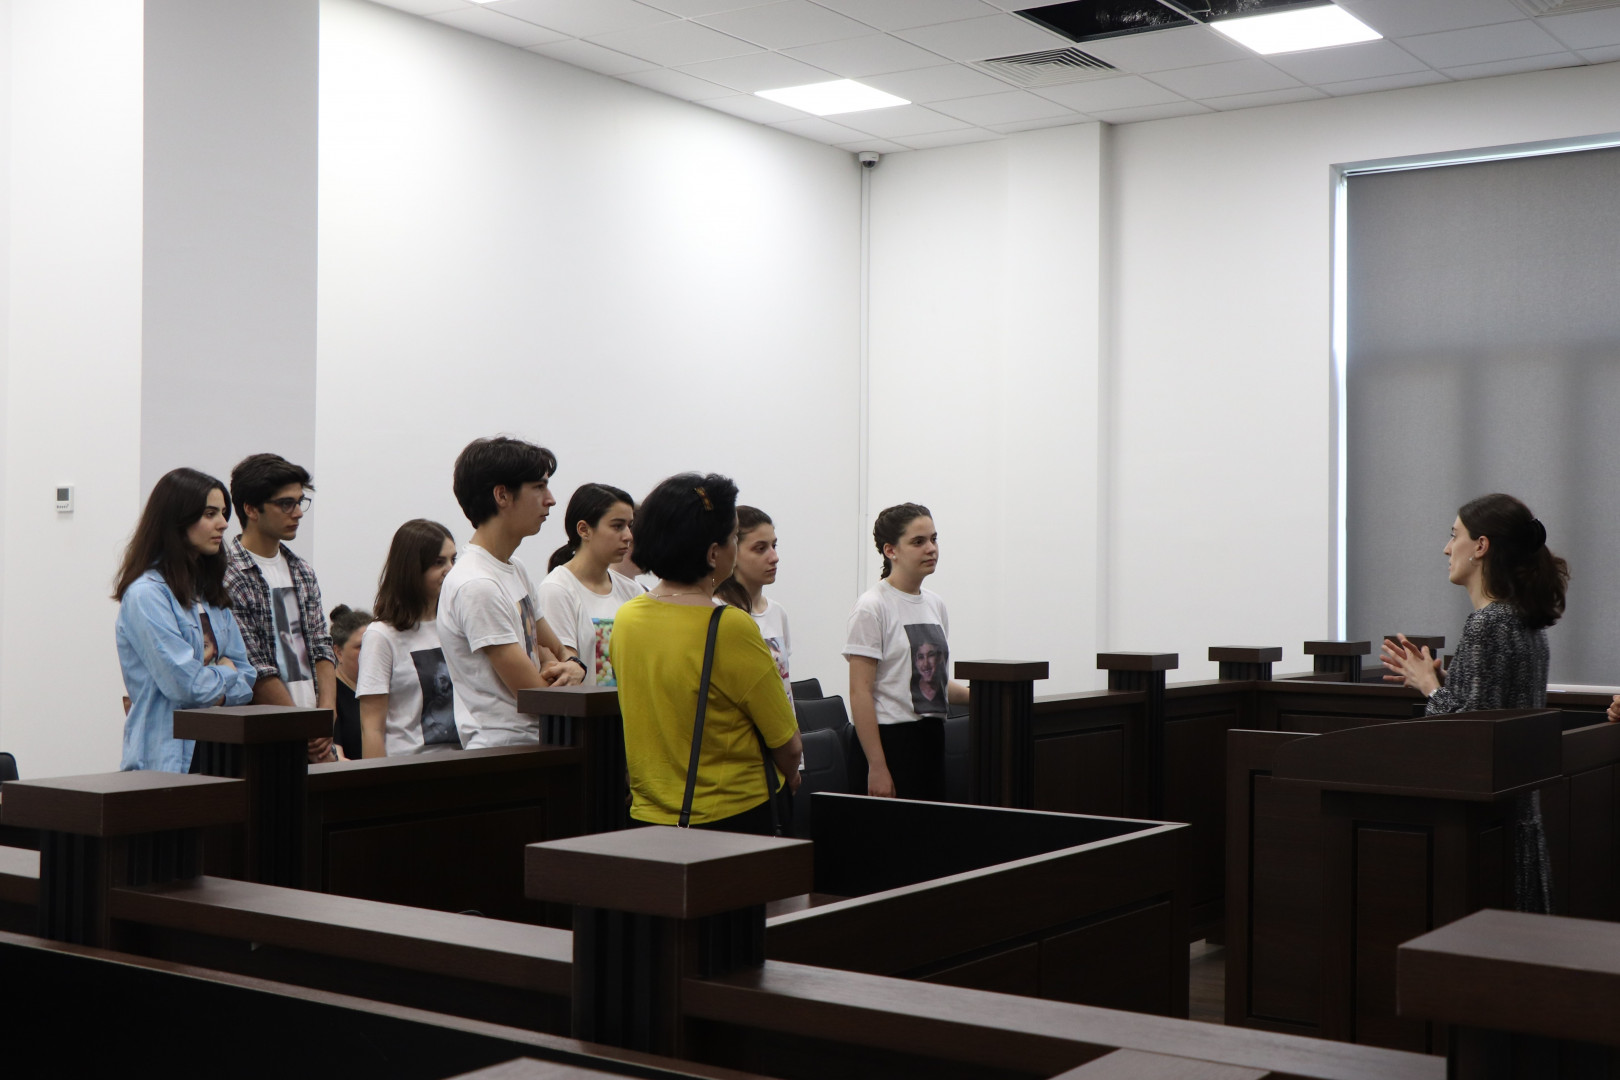 სკოლა „ახალი ლიცეუმის“ მოსწავლეები სტუმრად კავკასიის უნივერსიტეტში